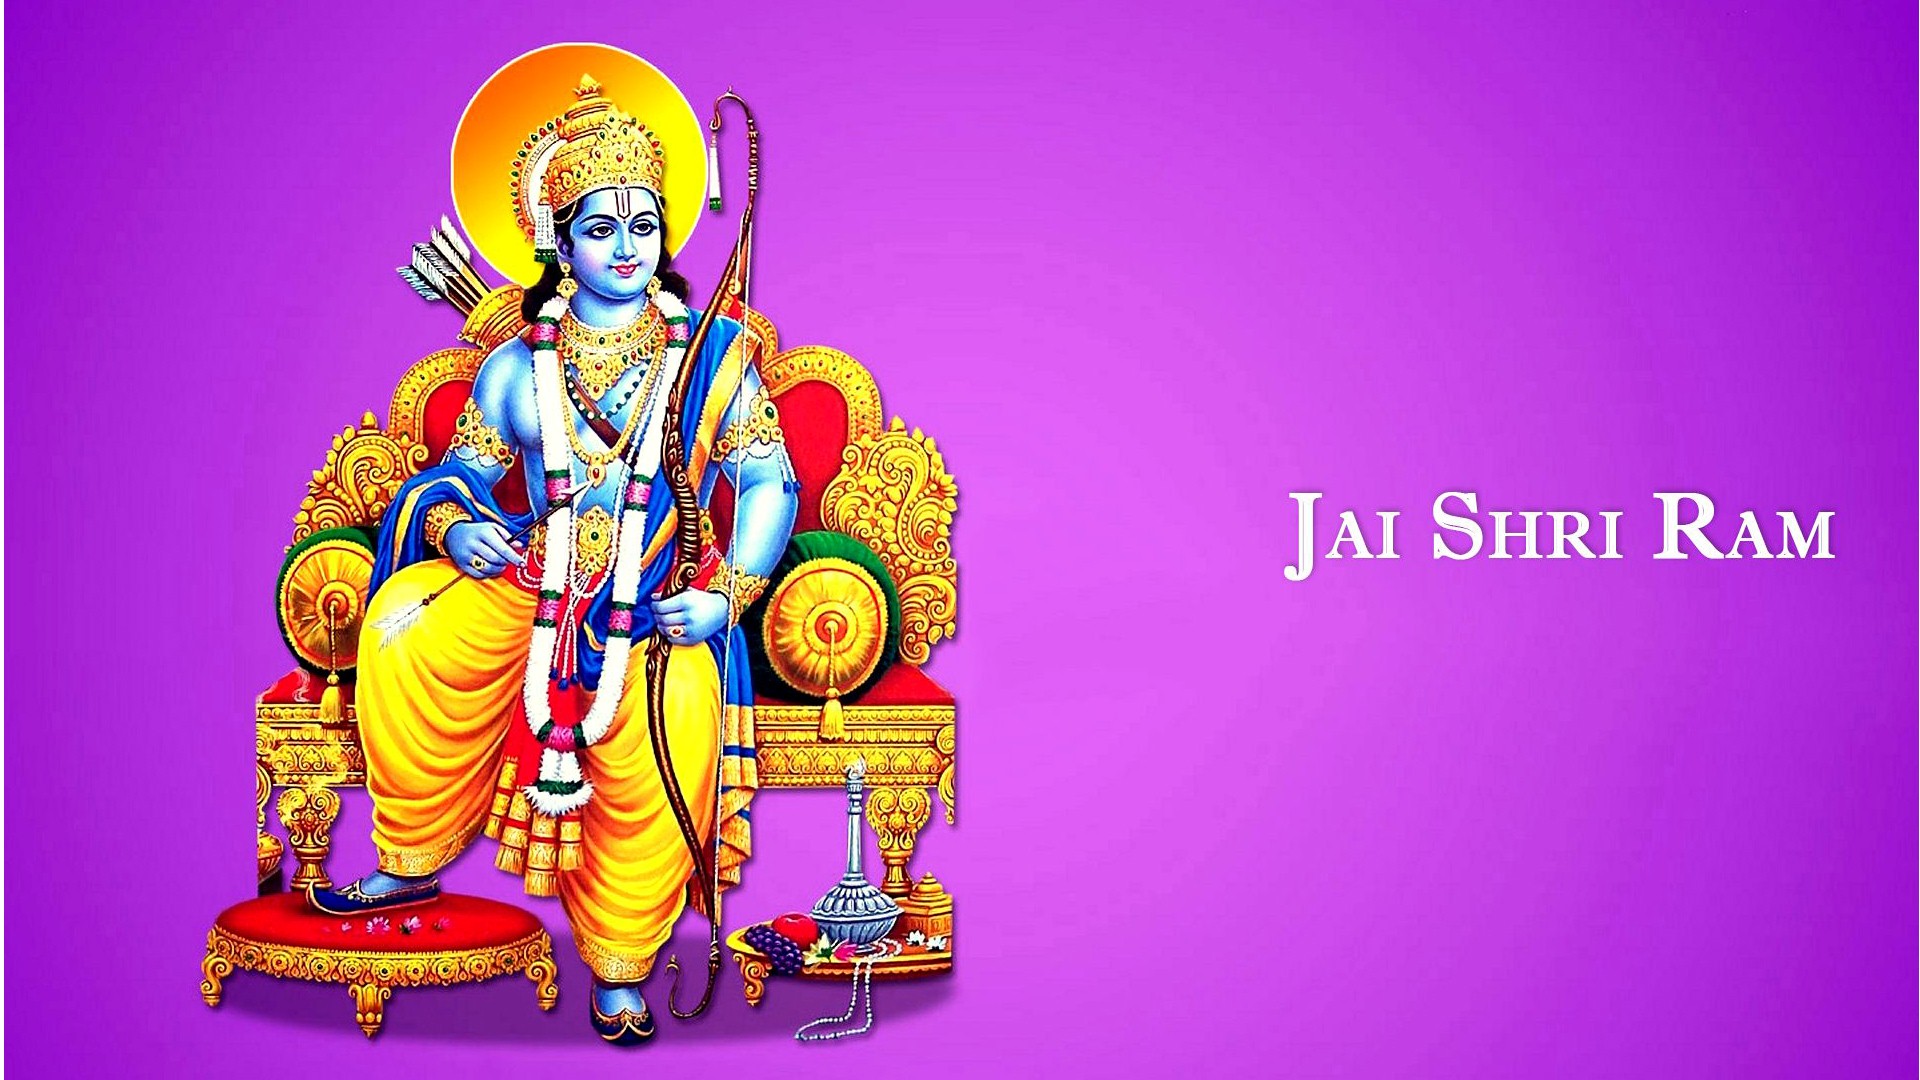 God Jai Shri Ram - Jai Shri Ram Hd - 1920x1080 Wallpaper 